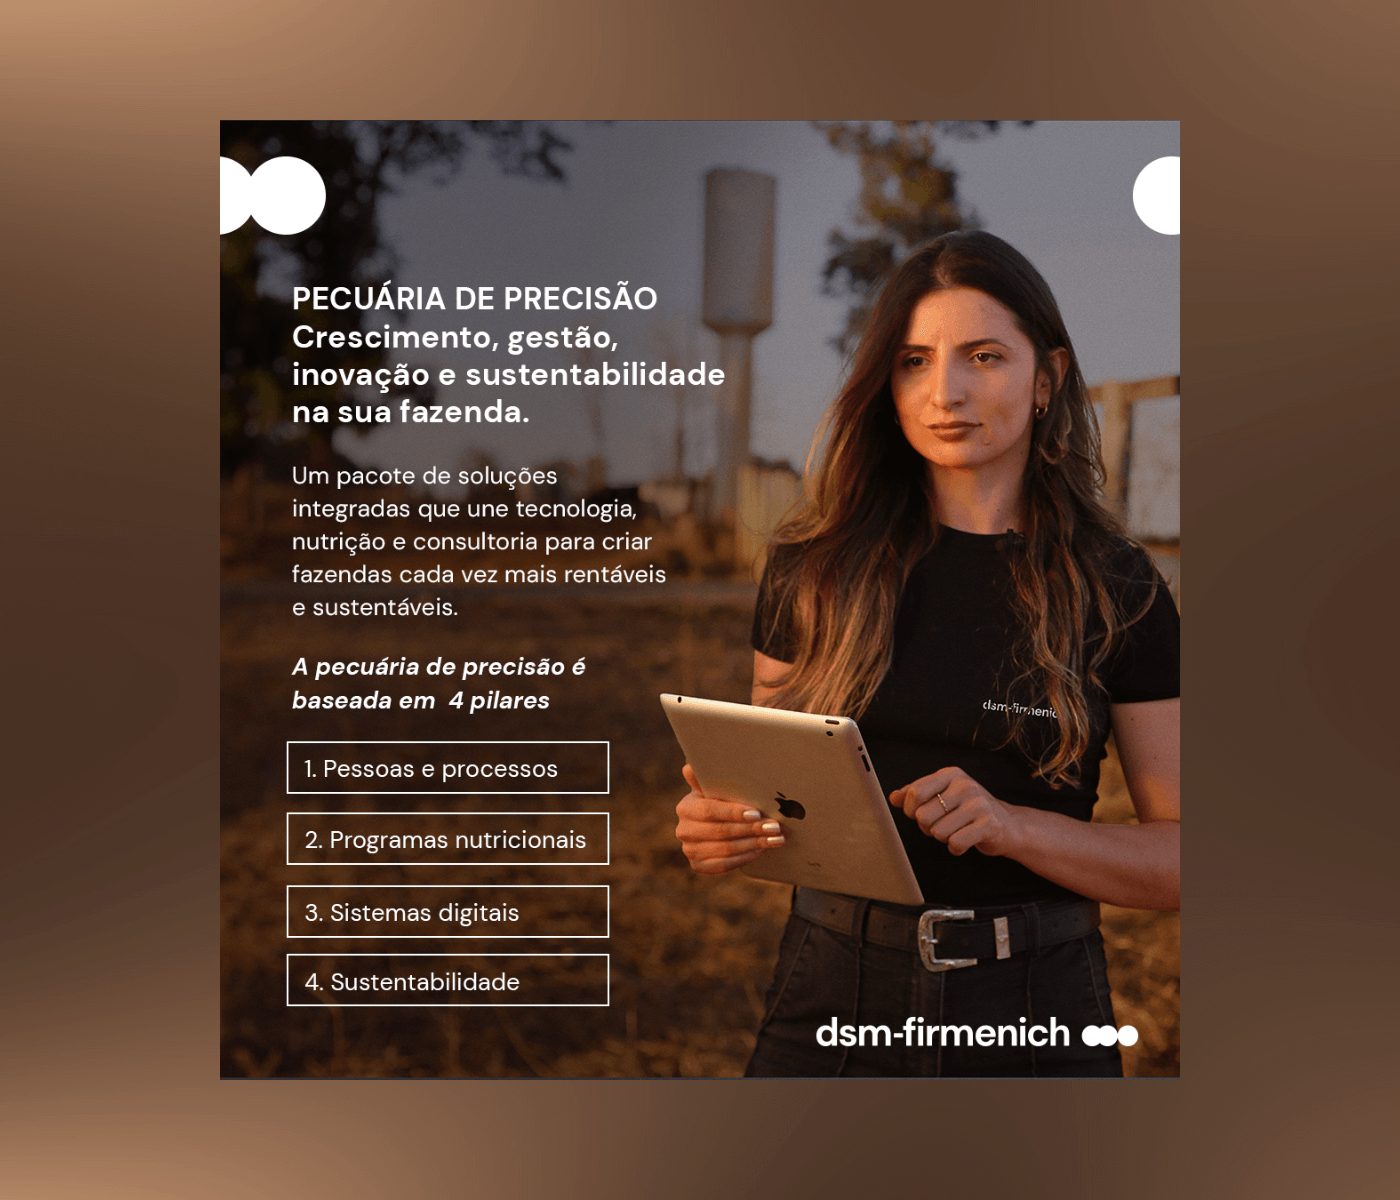 Novas soluções digitais da dsm-firmenich impulsionam pecuária brasileira